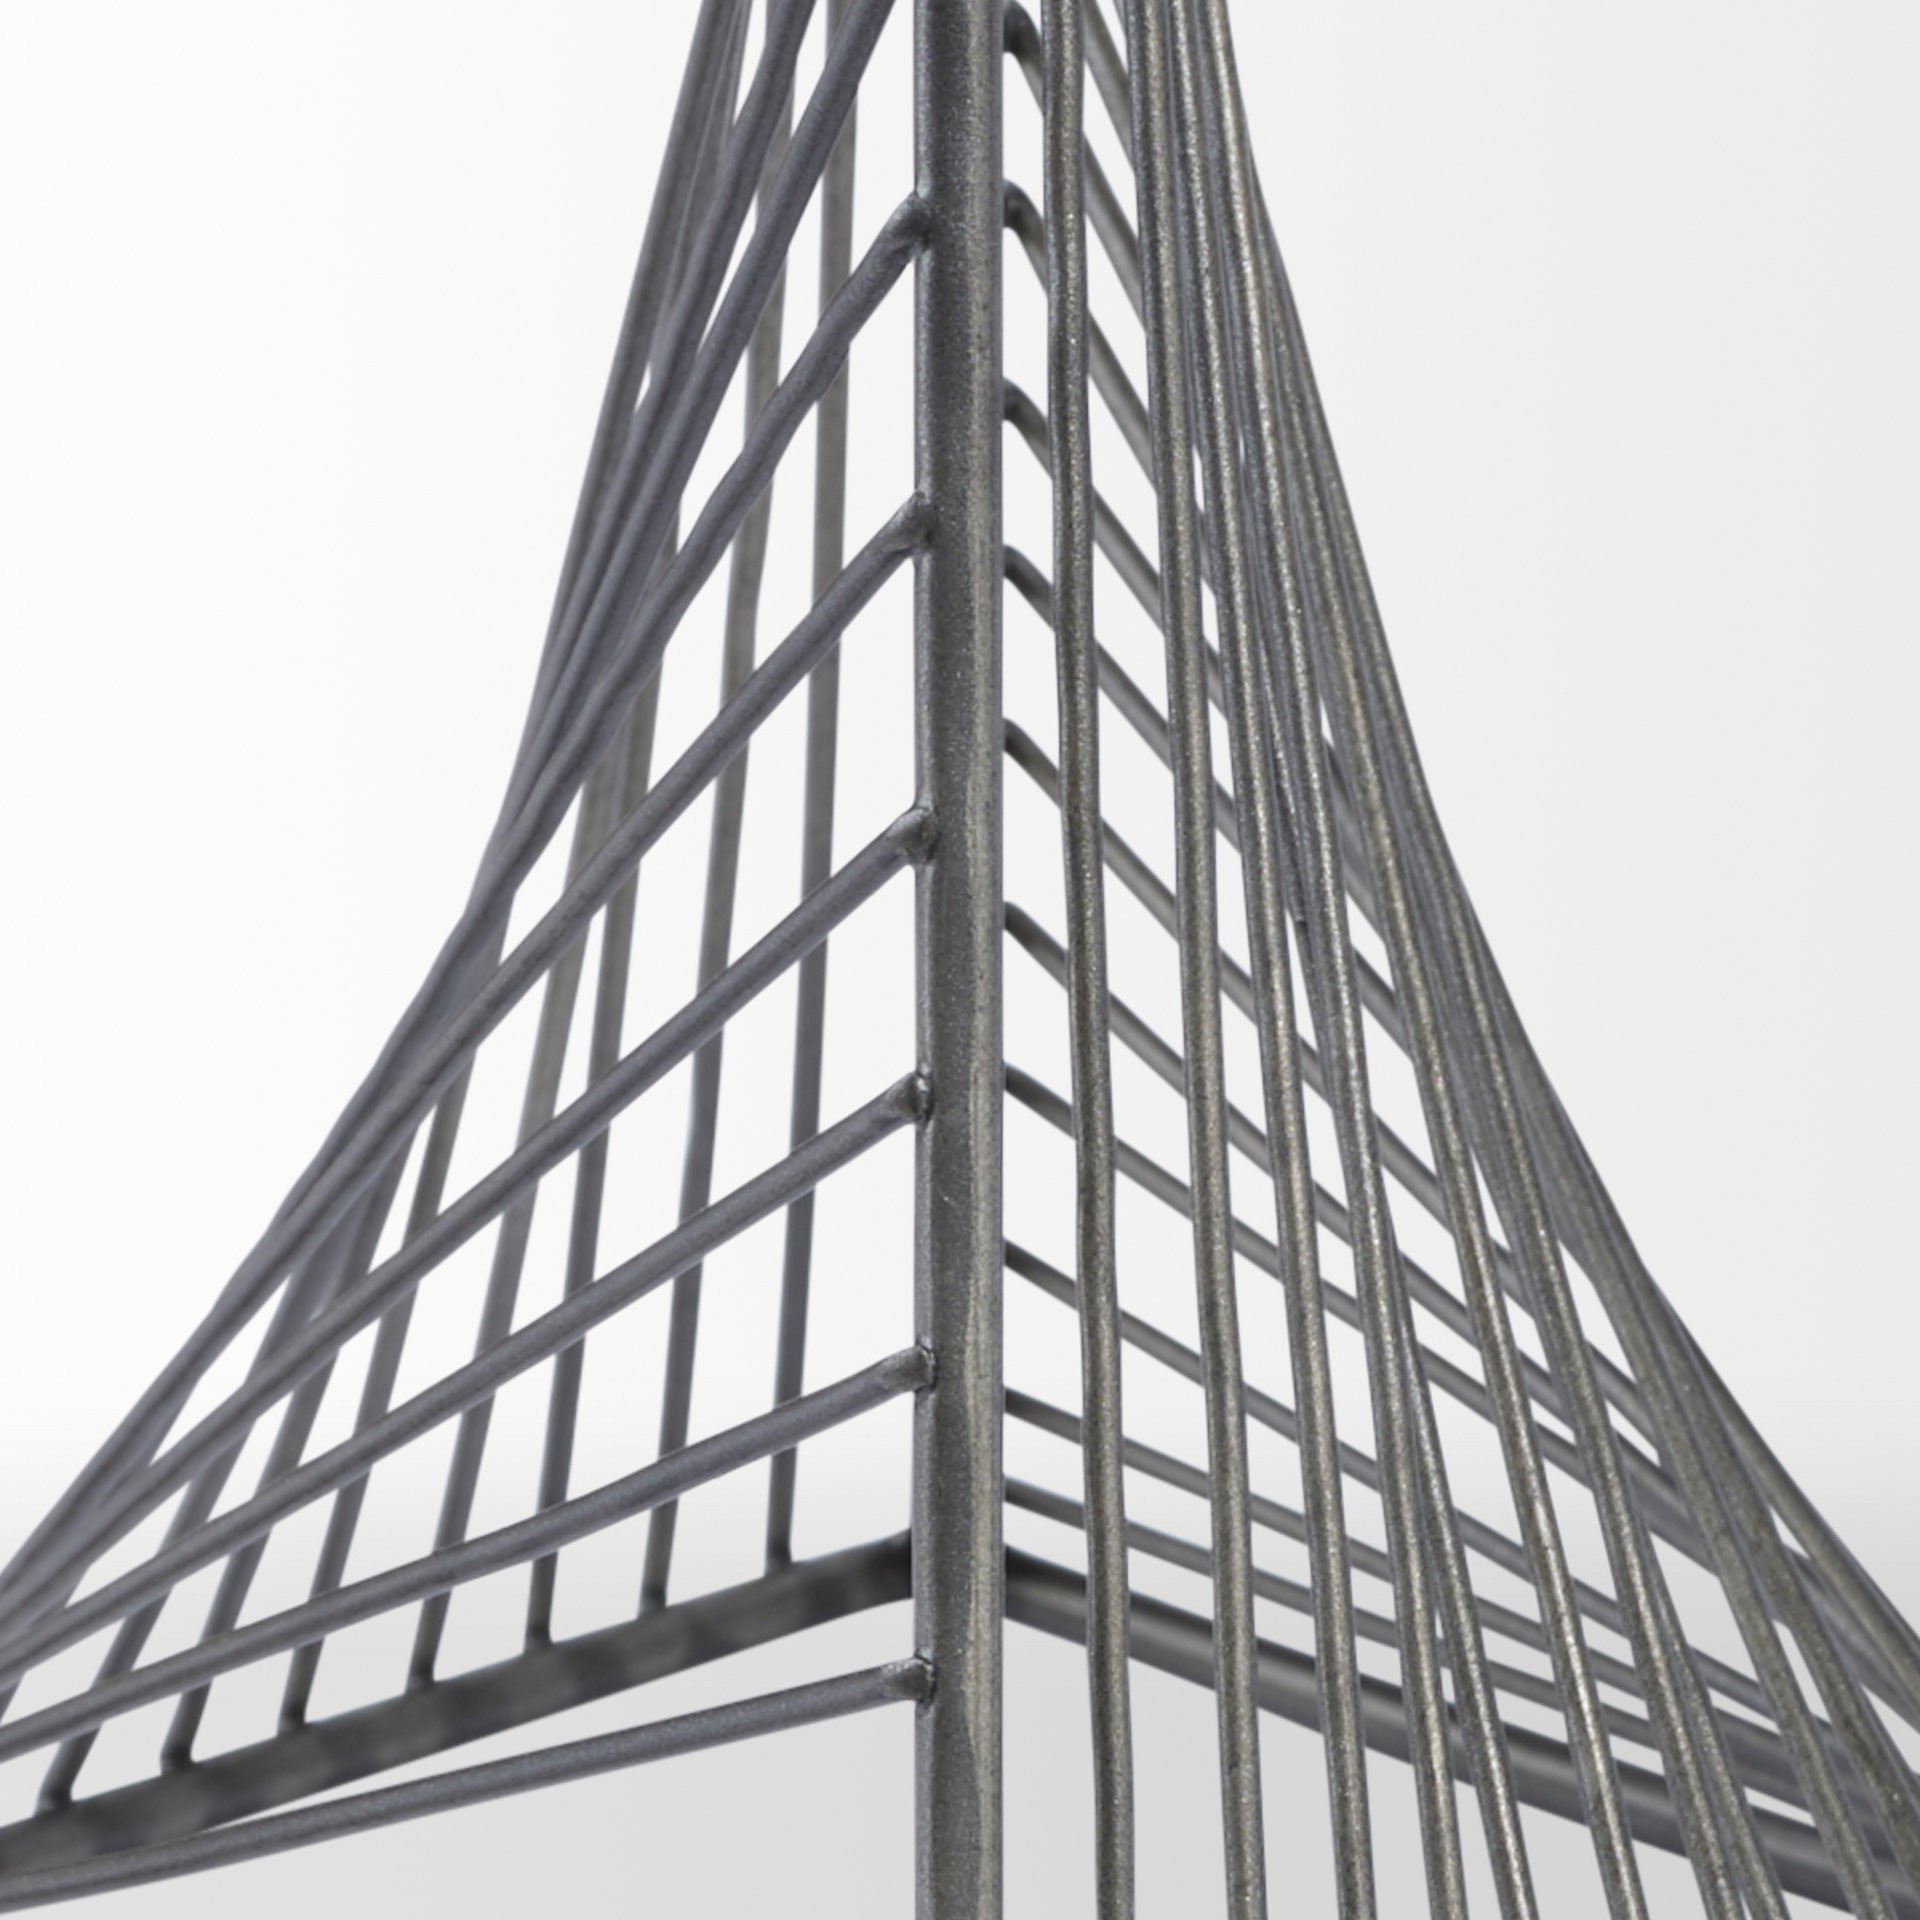 Contemporary Gray Metal Triangular Decor Piece